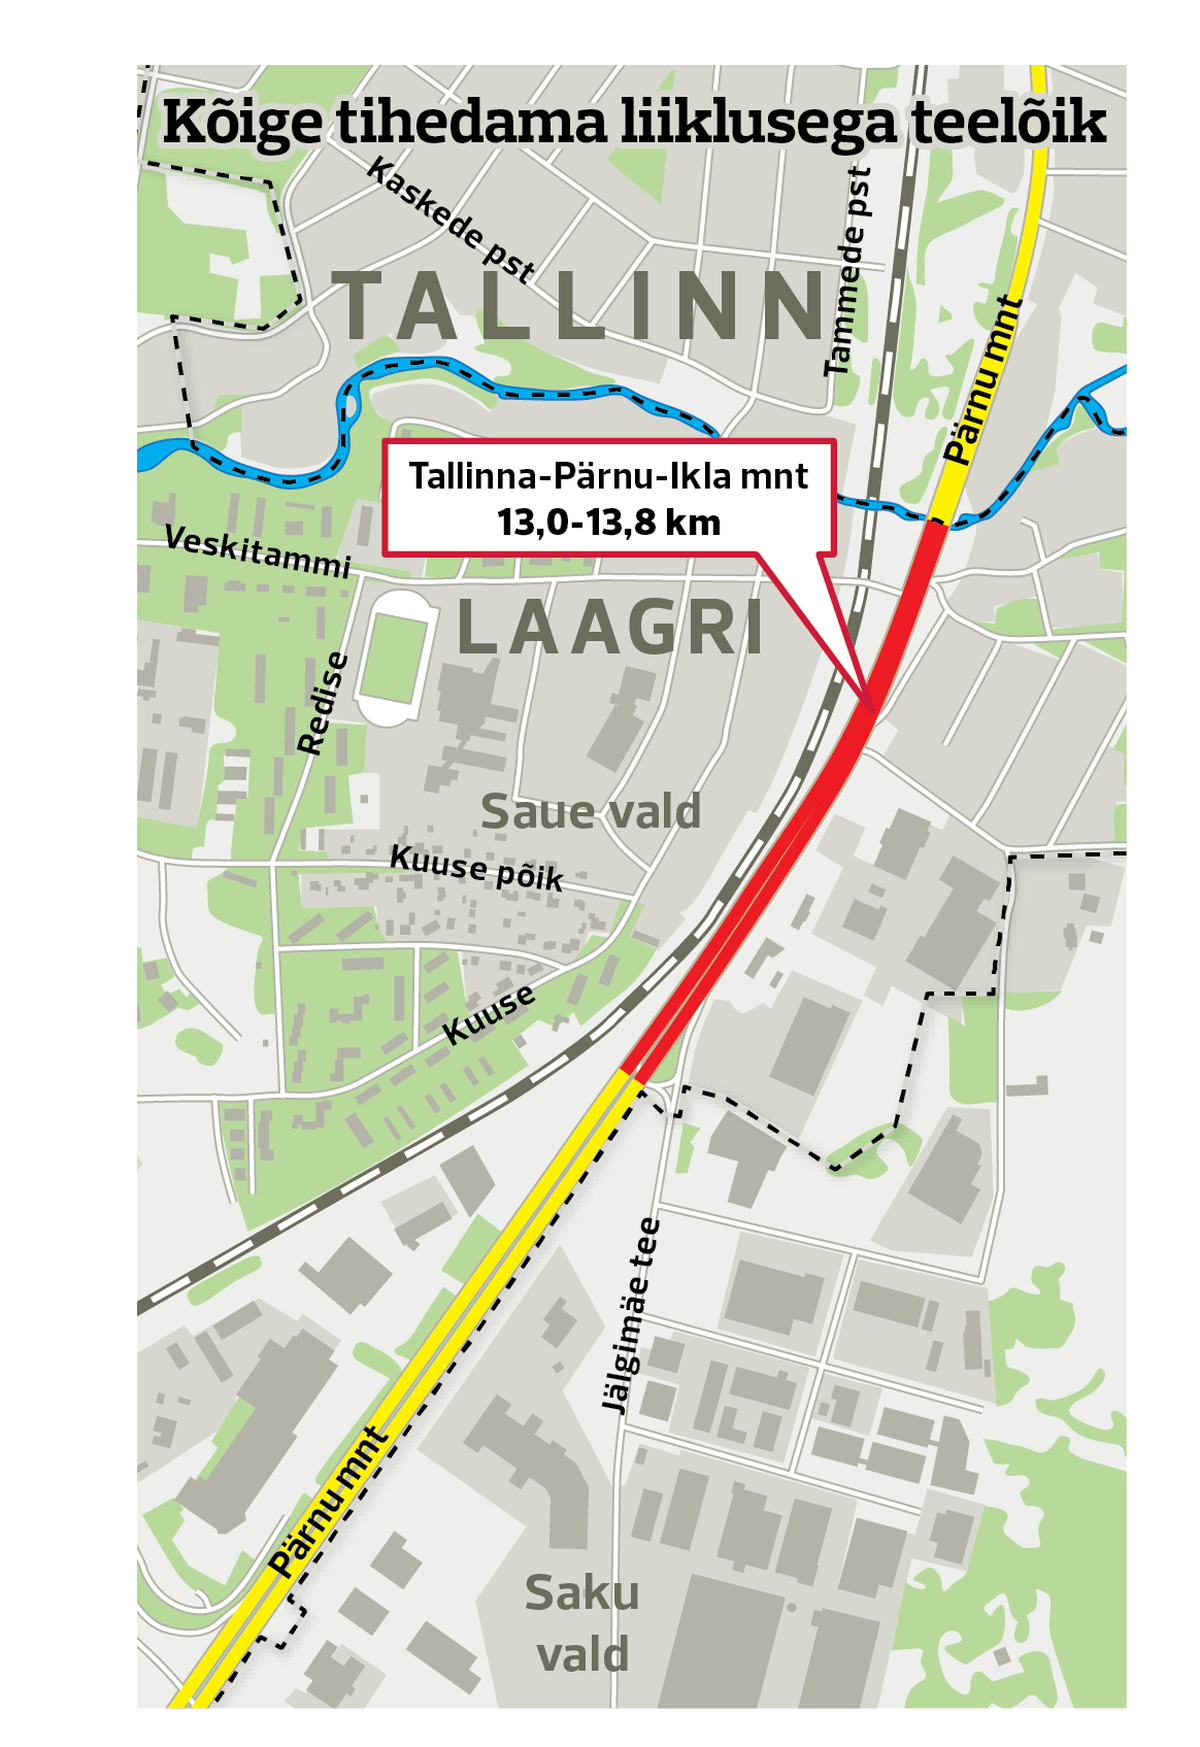 Eesti kõige liiklustihedam teelõik asub Tallinn-Pärnu-Ikla maantee alguses, kilomeetritel 13,0-13,8.